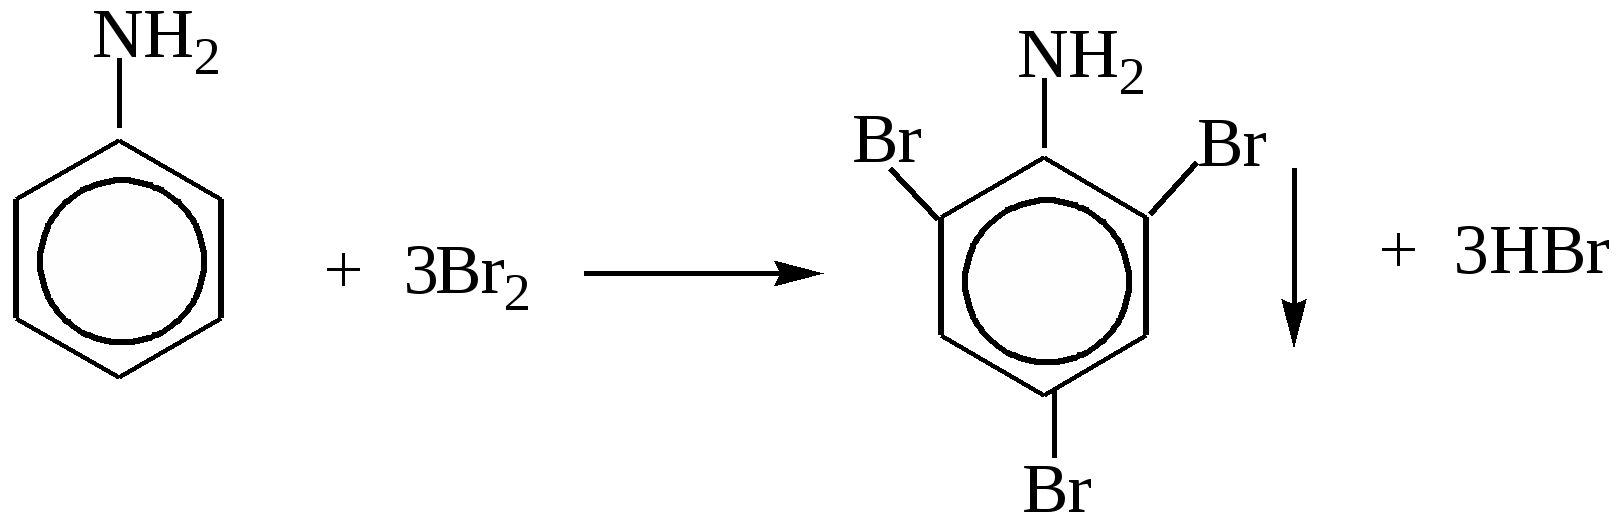 Анилин caocl2. Анилин плюс хлорная известь. Анилин и хлорная известь качественная реакция. Анилин с хлорной известью реакция. Анилин и бромная вода реакция